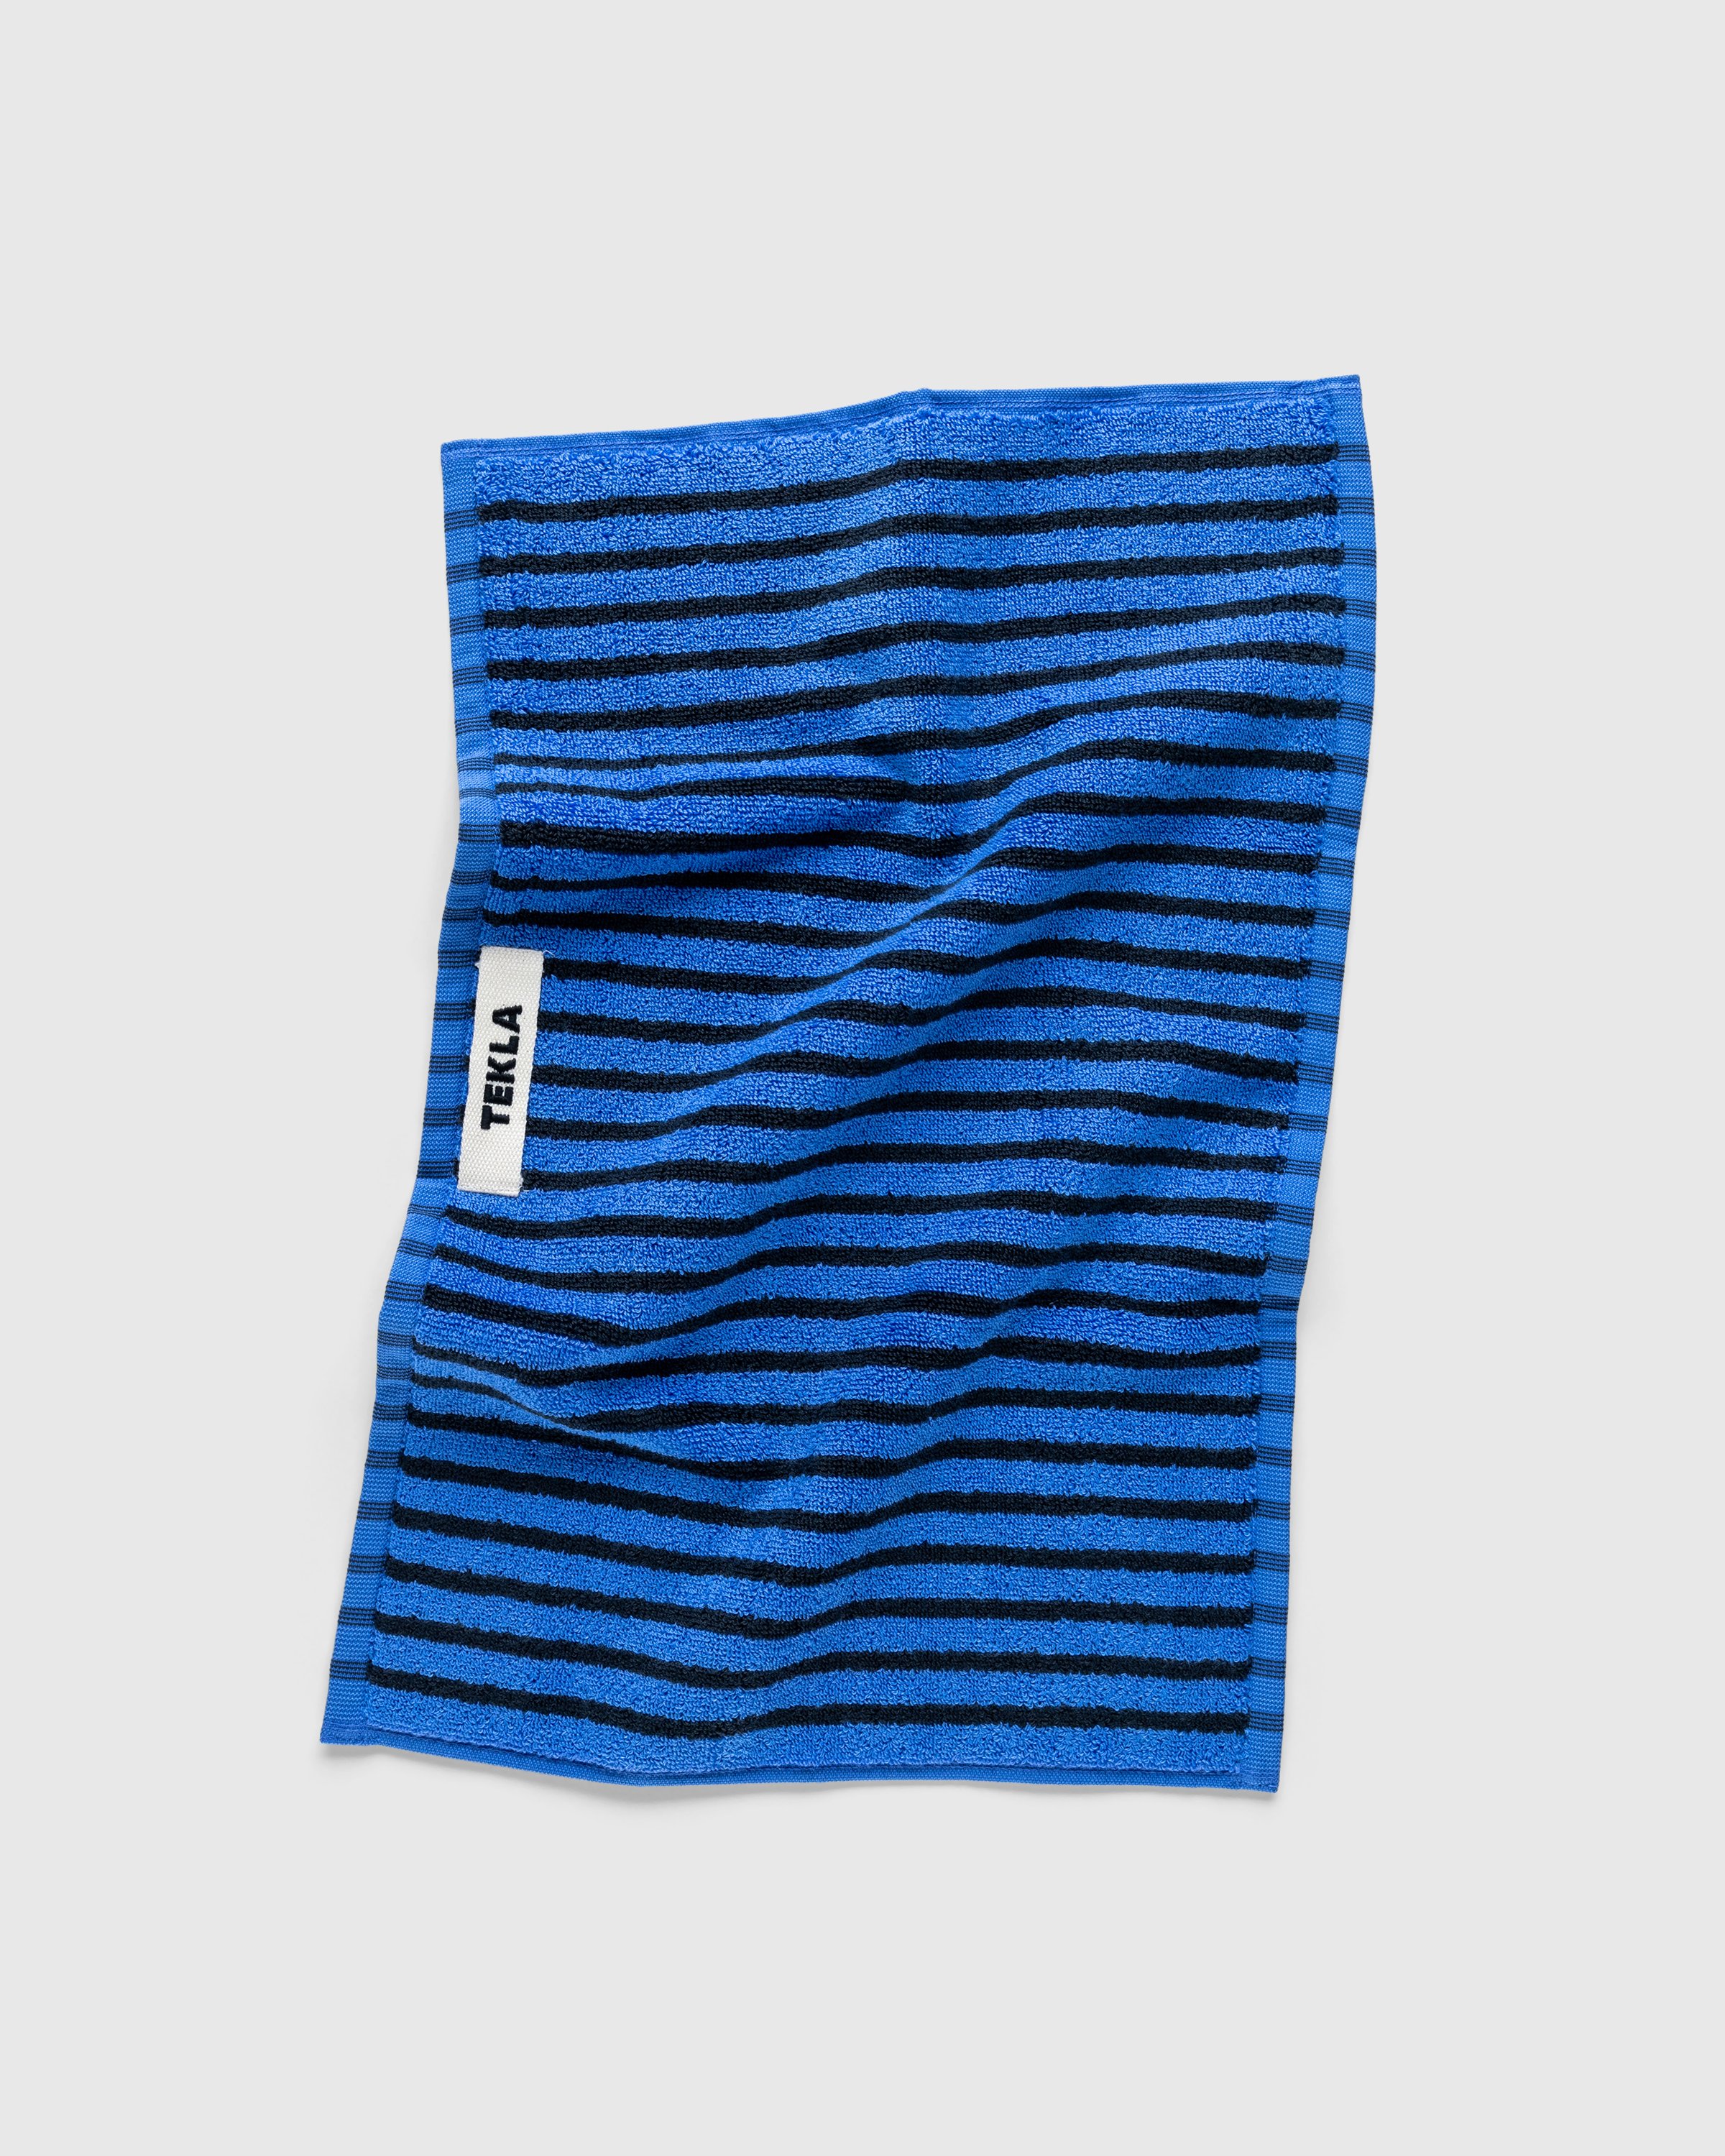 Tekla - Guest Towel Blue&Black - Lifestyle - Blue - Image 1